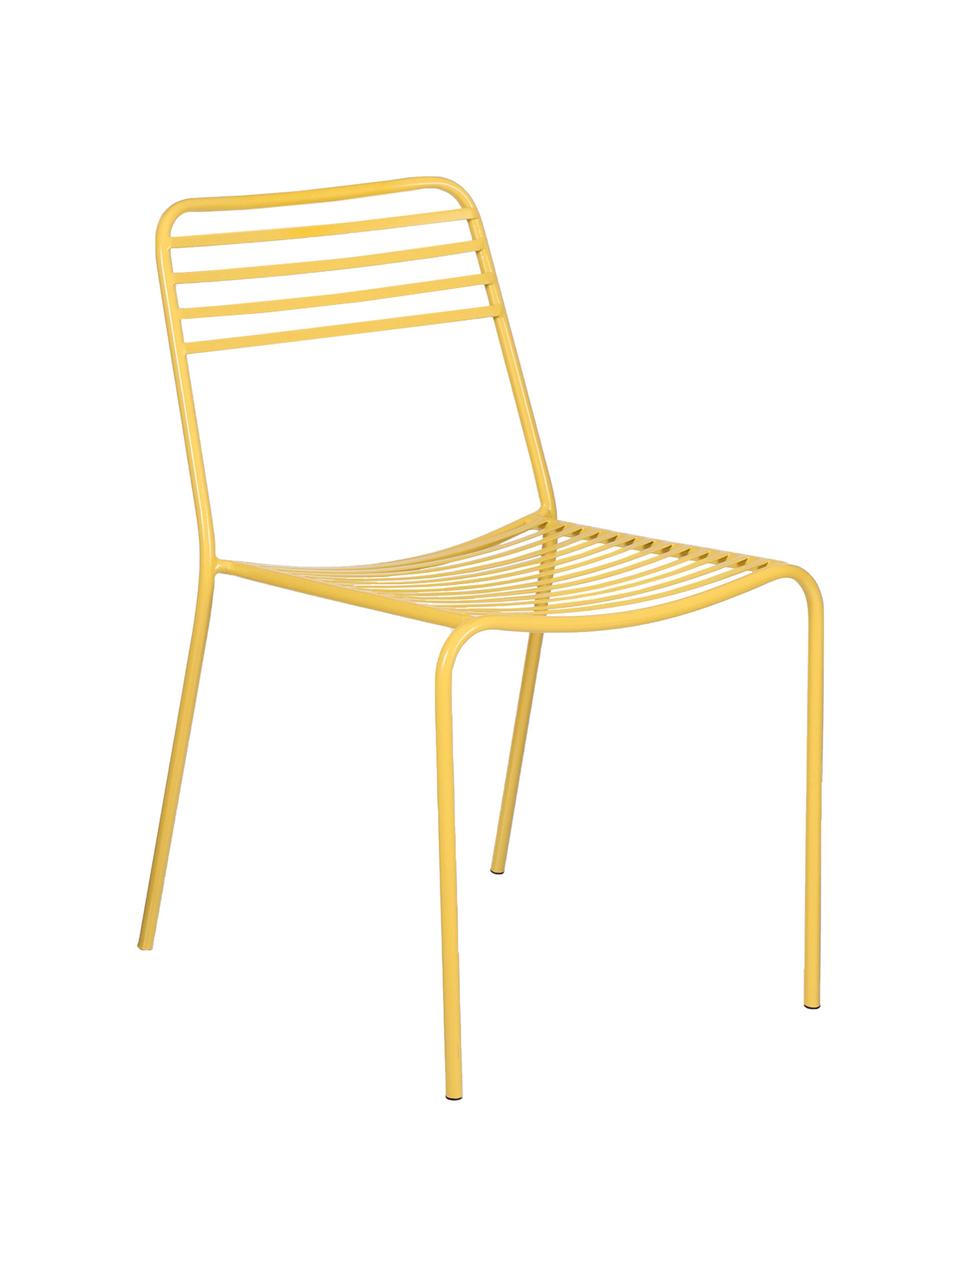 Kovová balkonová židle Tula, 2 ks, Žlutá